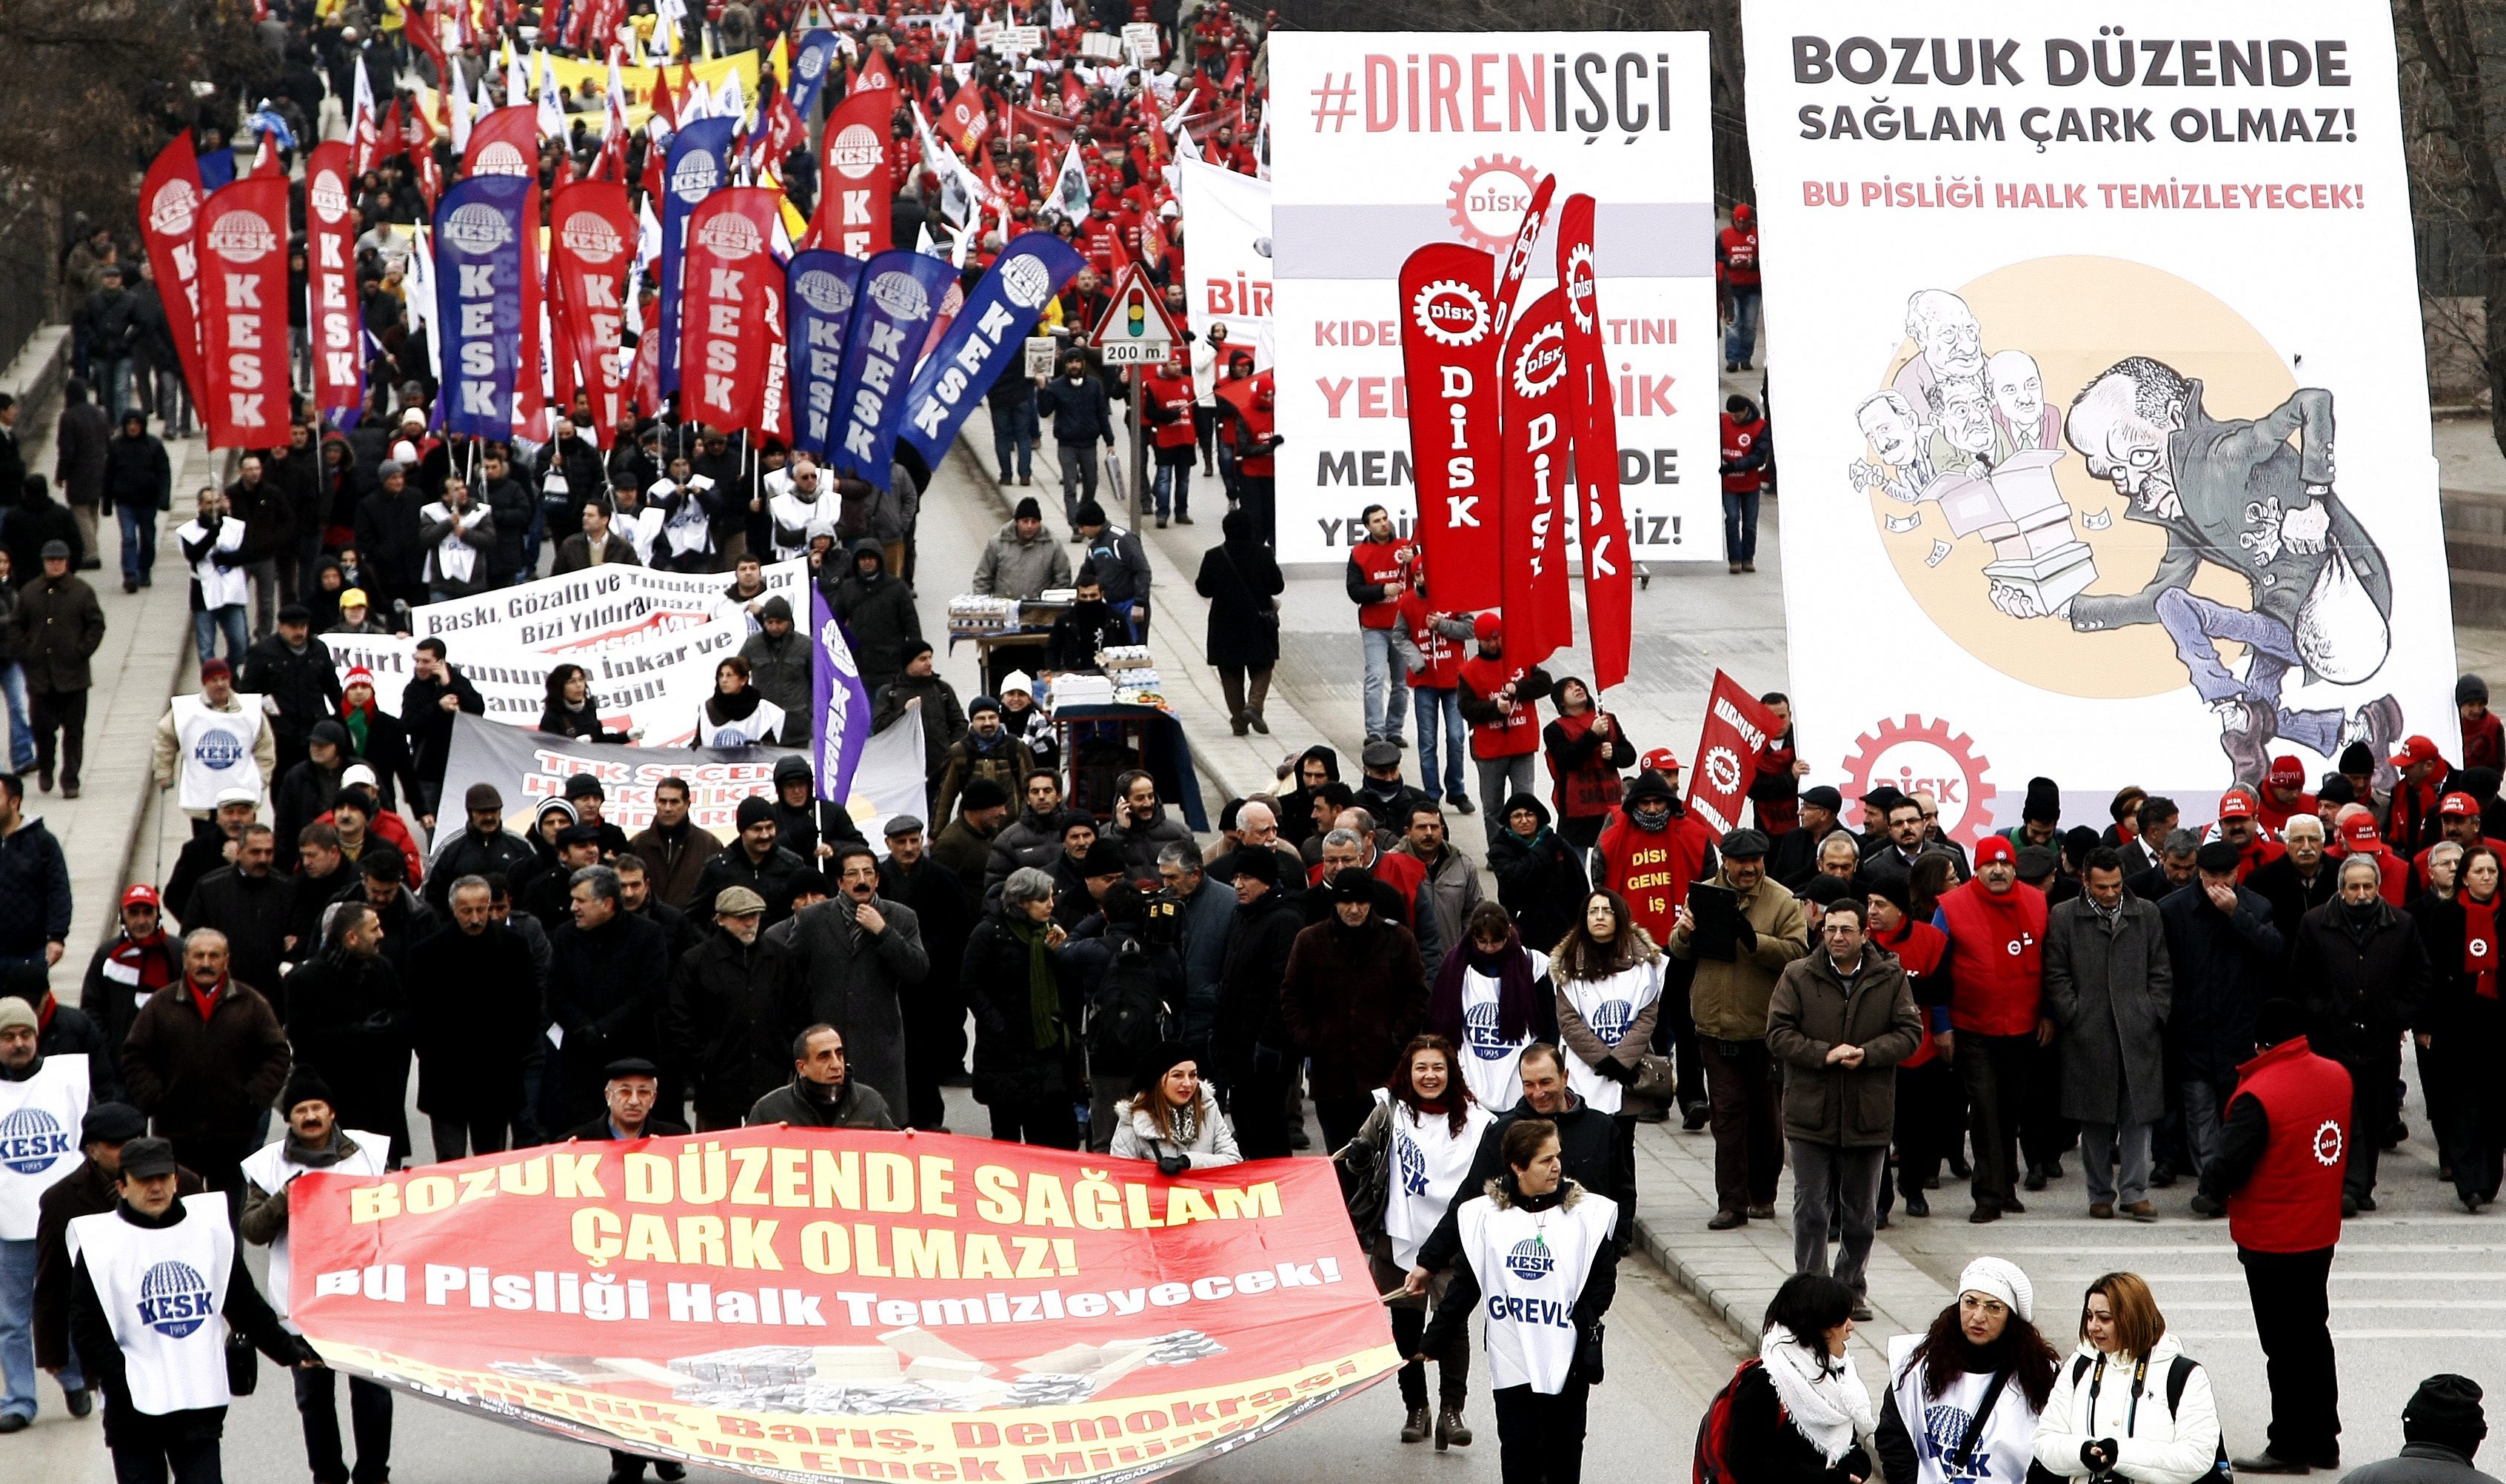 Μίζες δεκάδων εκατομμυρίων εισέπραξαν υπουργοί της Τουρκίας